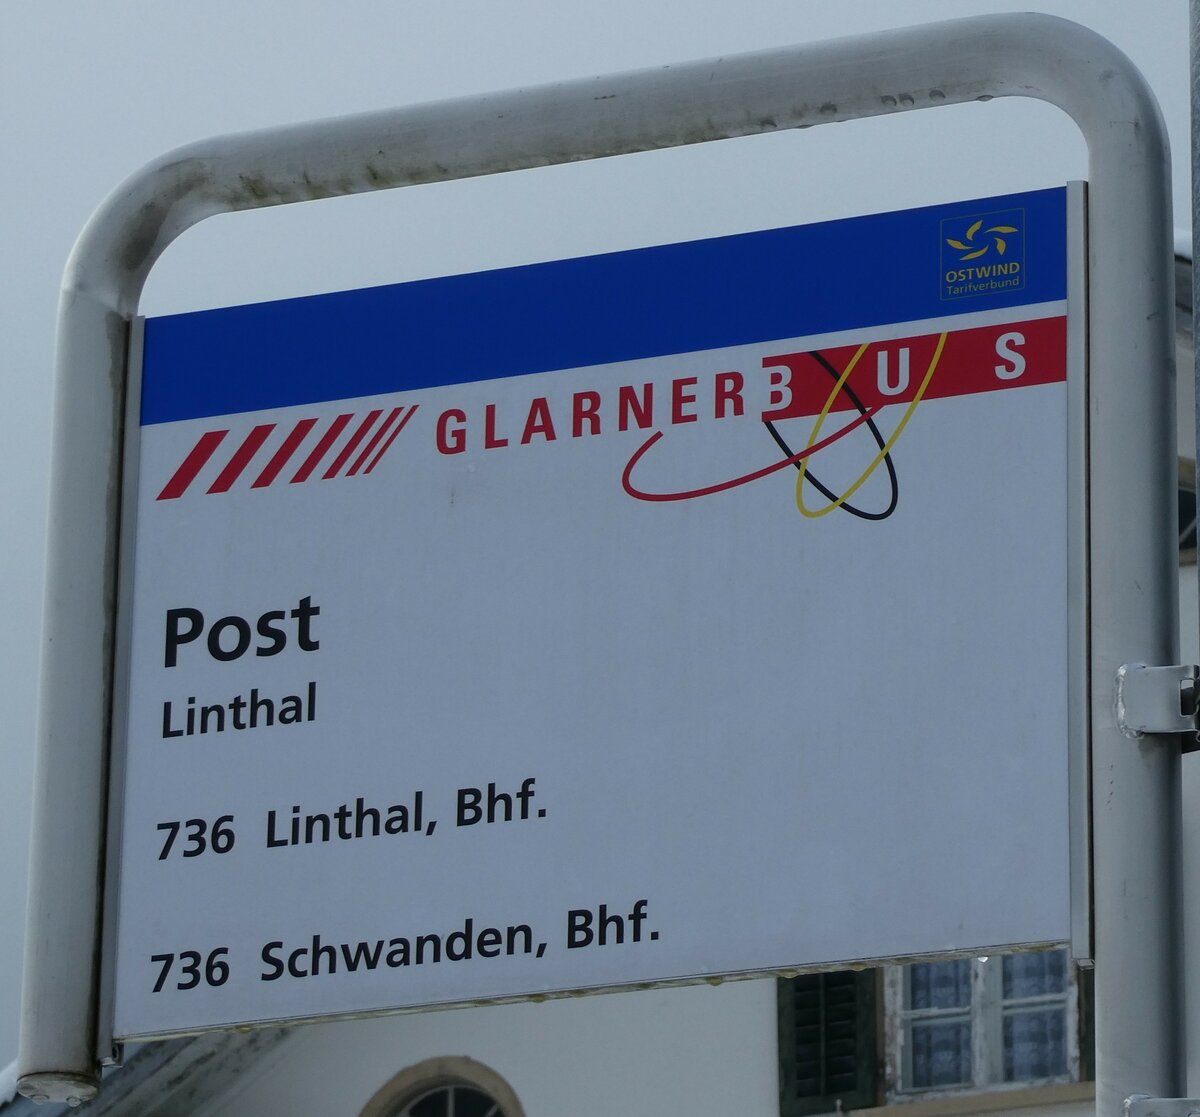 (231'993) - GLARNER BUS-Haltestellenschild - Linthal, Post - am 10. Januar 2022